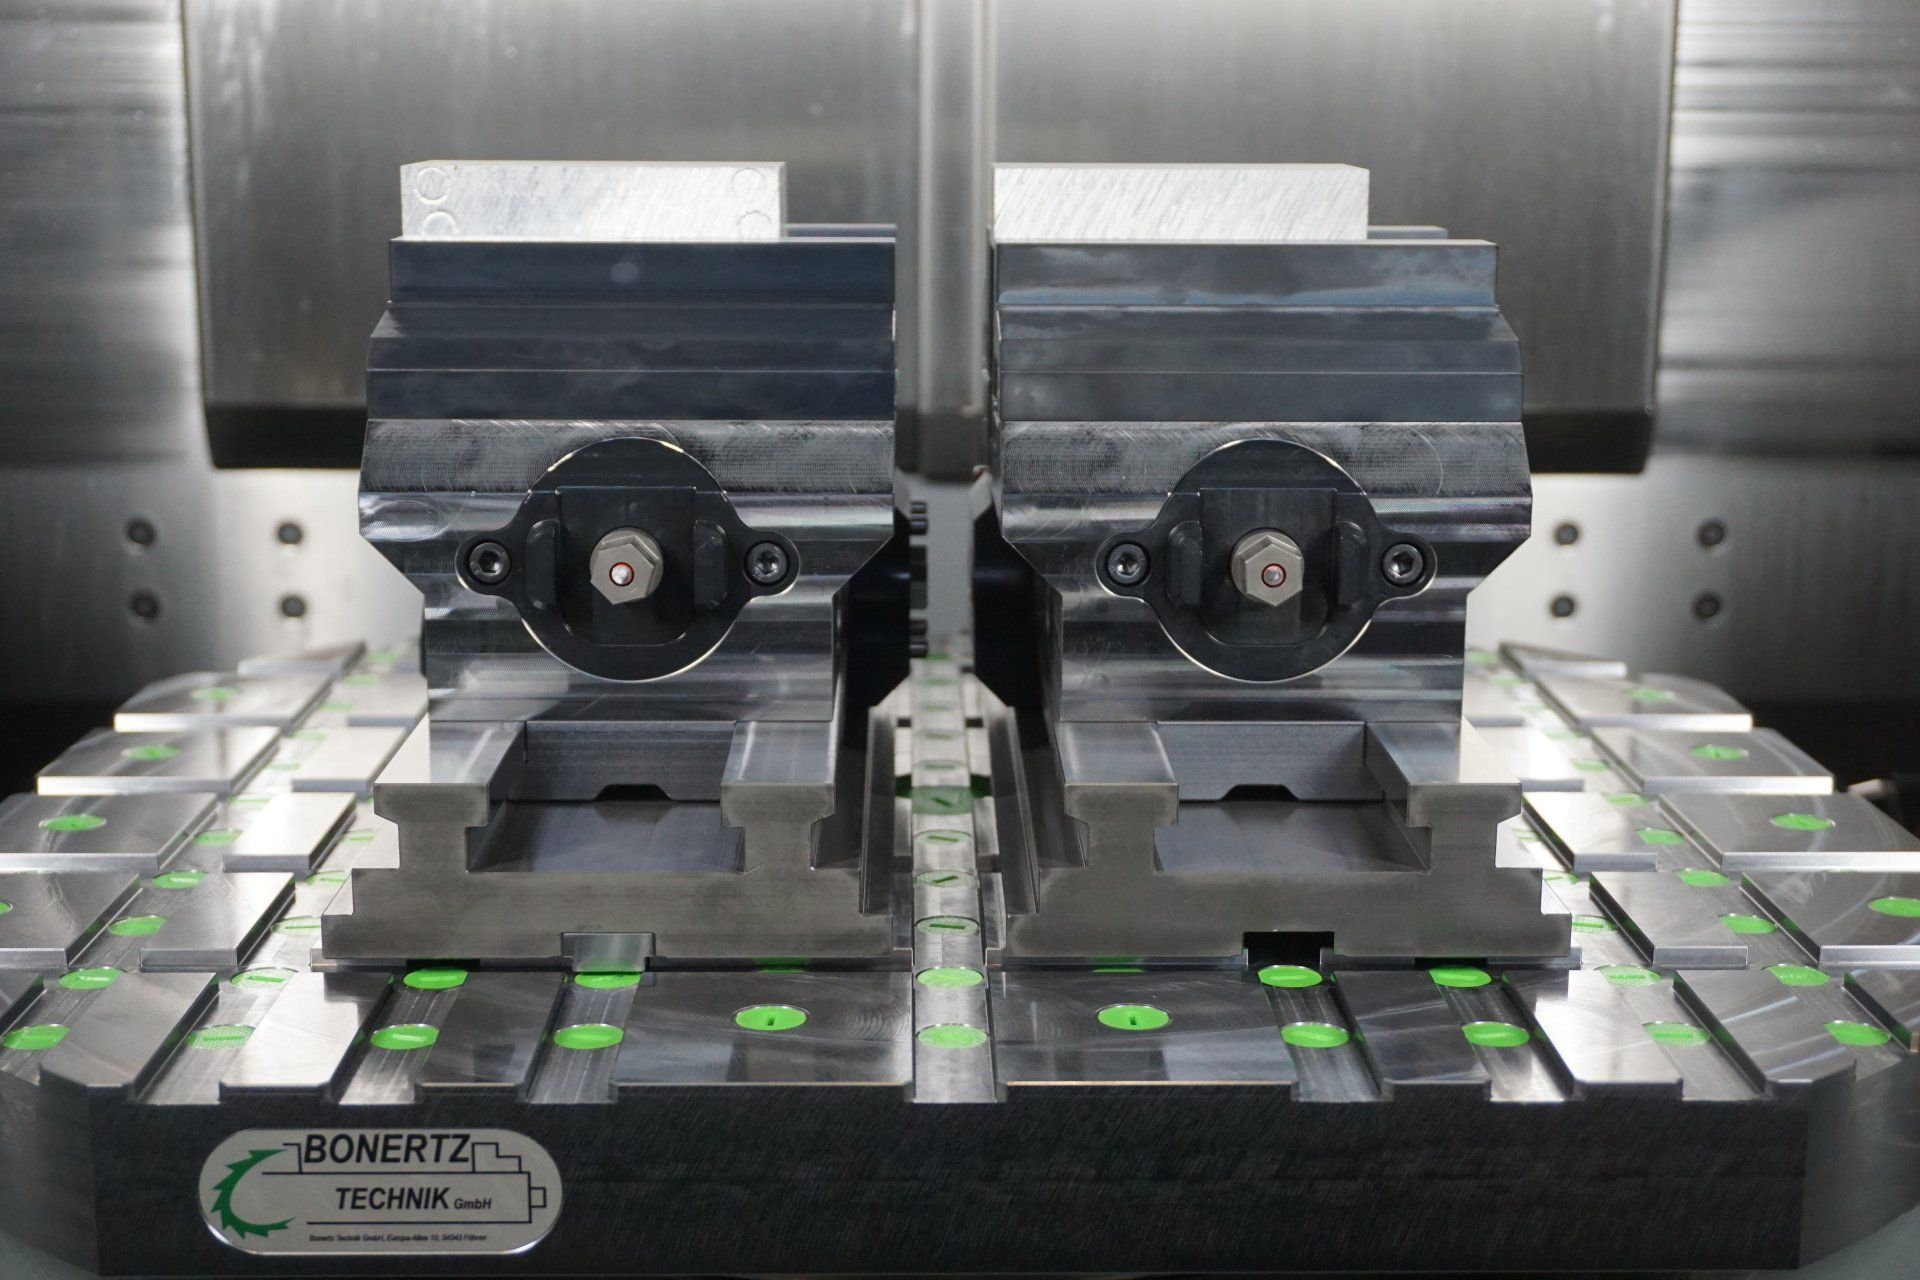 HPC - 5-Achs Schraubstock auf HPB - Maschinentisch Enge doppel Anordnung